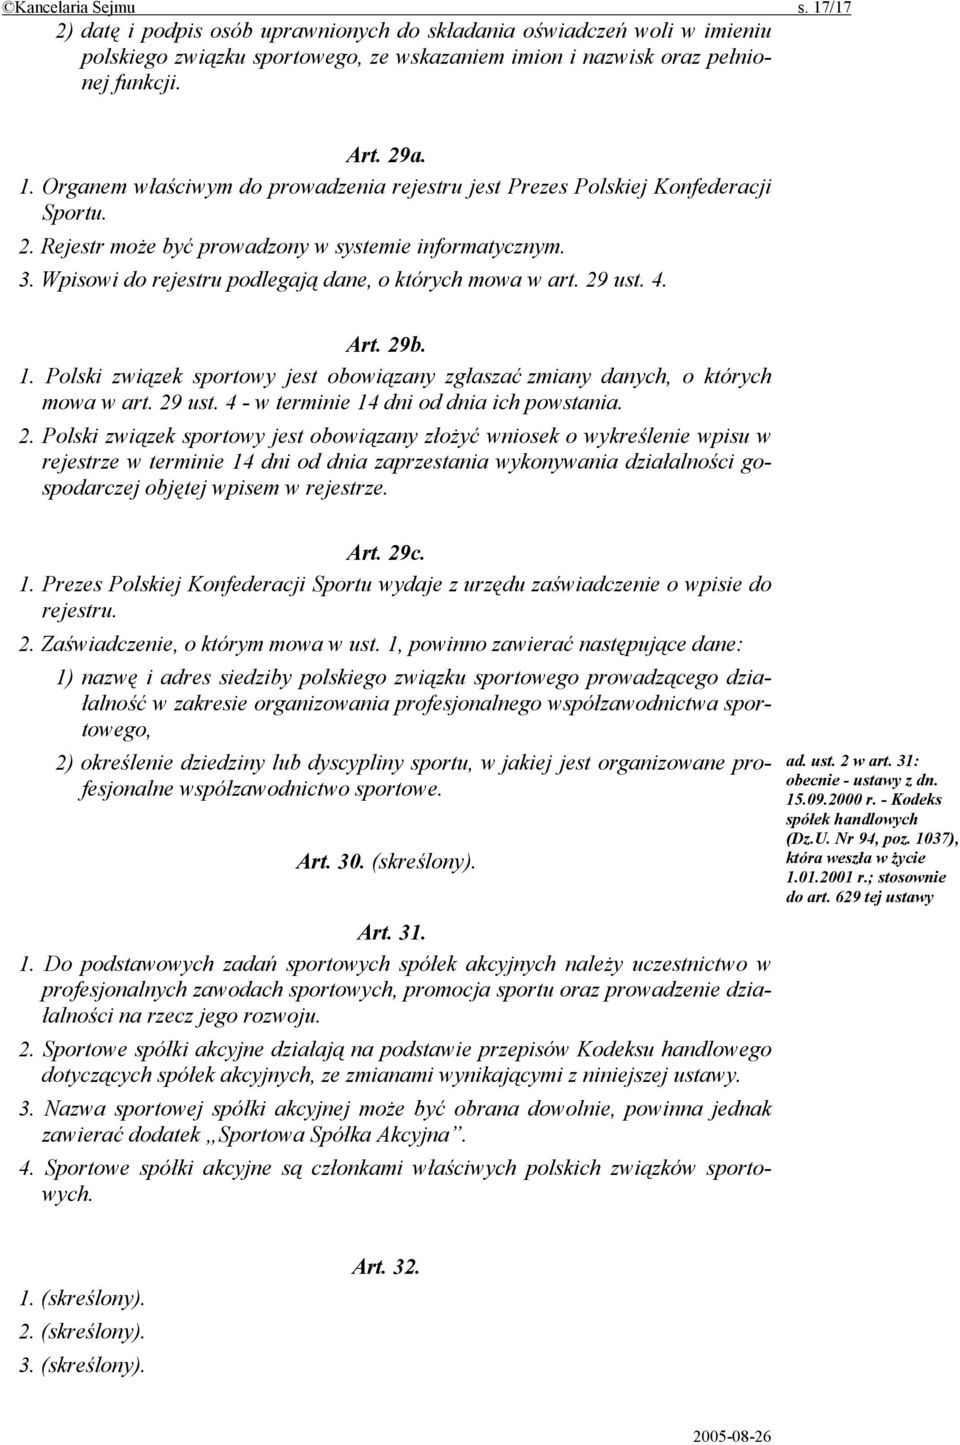 Polski związek sportowy jest obowiązany zgłaszać zmiany danych, o których mowa w art. 29